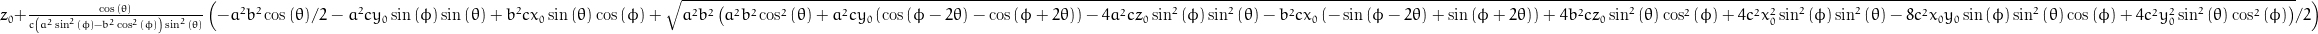 z_{0} + \frac{\cos{\left (\theta \right )}}{c \left(a^{2} \sin^{2}{\left (\phi \right )} - b^{2} \cos^{2}{\left (\phi \right )}\right) \sin^{2}{\left (\theta \right )}} \left(- \frac{a^{2} b^{2}}{2} \cos{\left (\theta \right )} - a^{2} c y_{0} \sin{\left (\phi \right )} \sin{\left (\theta \right )} + b^{2} c x_{0} \sin{\left (\theta \right )} \cos{\left (\phi \right )} + \frac{1}{2} \sqrt{a^{2} b^{2} \left(a^{2} b^{2} \cos^{2}{\left (\theta \right )} + a^{2} c y_{0} \left(\cos{\left (\phi - 2 \theta \right )} - \cos{\left (\phi + 2 \theta \right )}\right) - 4 a^{2} c z_{0} \sin^{2}{\left (\phi \right )} \sin^{2}{\left (\theta \right )} - b^{2} c x_{0} \left(- \sin{\left (\phi - 2 \theta \right )} + \sin{\left (\phi + 2 \theta \right )}\right) + 4 b^{2} c z_{0} \sin^{2}{\left (\theta \right )} \cos^{2}{\left (\phi \right )} + 4 c^{2} x_{0}^{2} \sin^{2}{\left (\phi \right )} \sin^{2}{\left (\theta \right )} - 8 c^{2} x_{0} y_{0} \sin{\left (\phi \right )} \sin^{2}{\left (\theta \right )} \cos{\left (\phi \right )} + 4 c^{2} y_{0}^{2} \sin^{2}{\left (\theta \right )} \cos^{2}{\left (\phi \right )}\right)}\right)